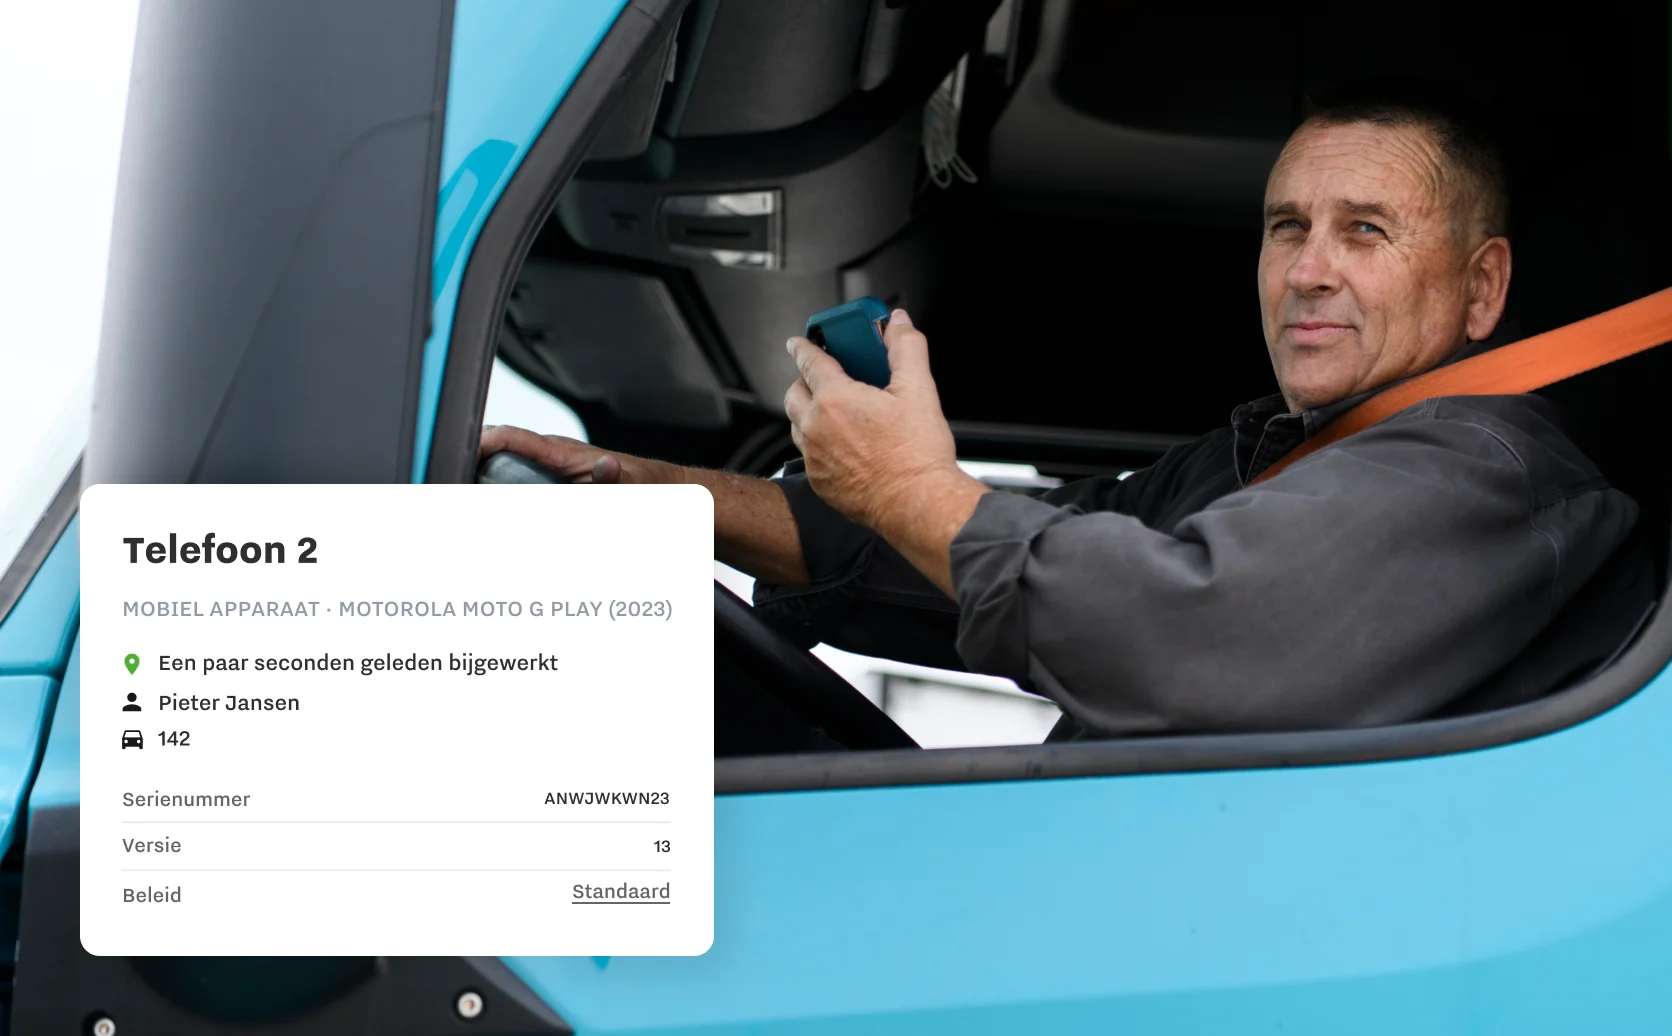 Afbeelding van chauffeur met specifiek apparaat en info van mobiel Samsara-dashboard, zoals chauffeur, voertuig, serienummer